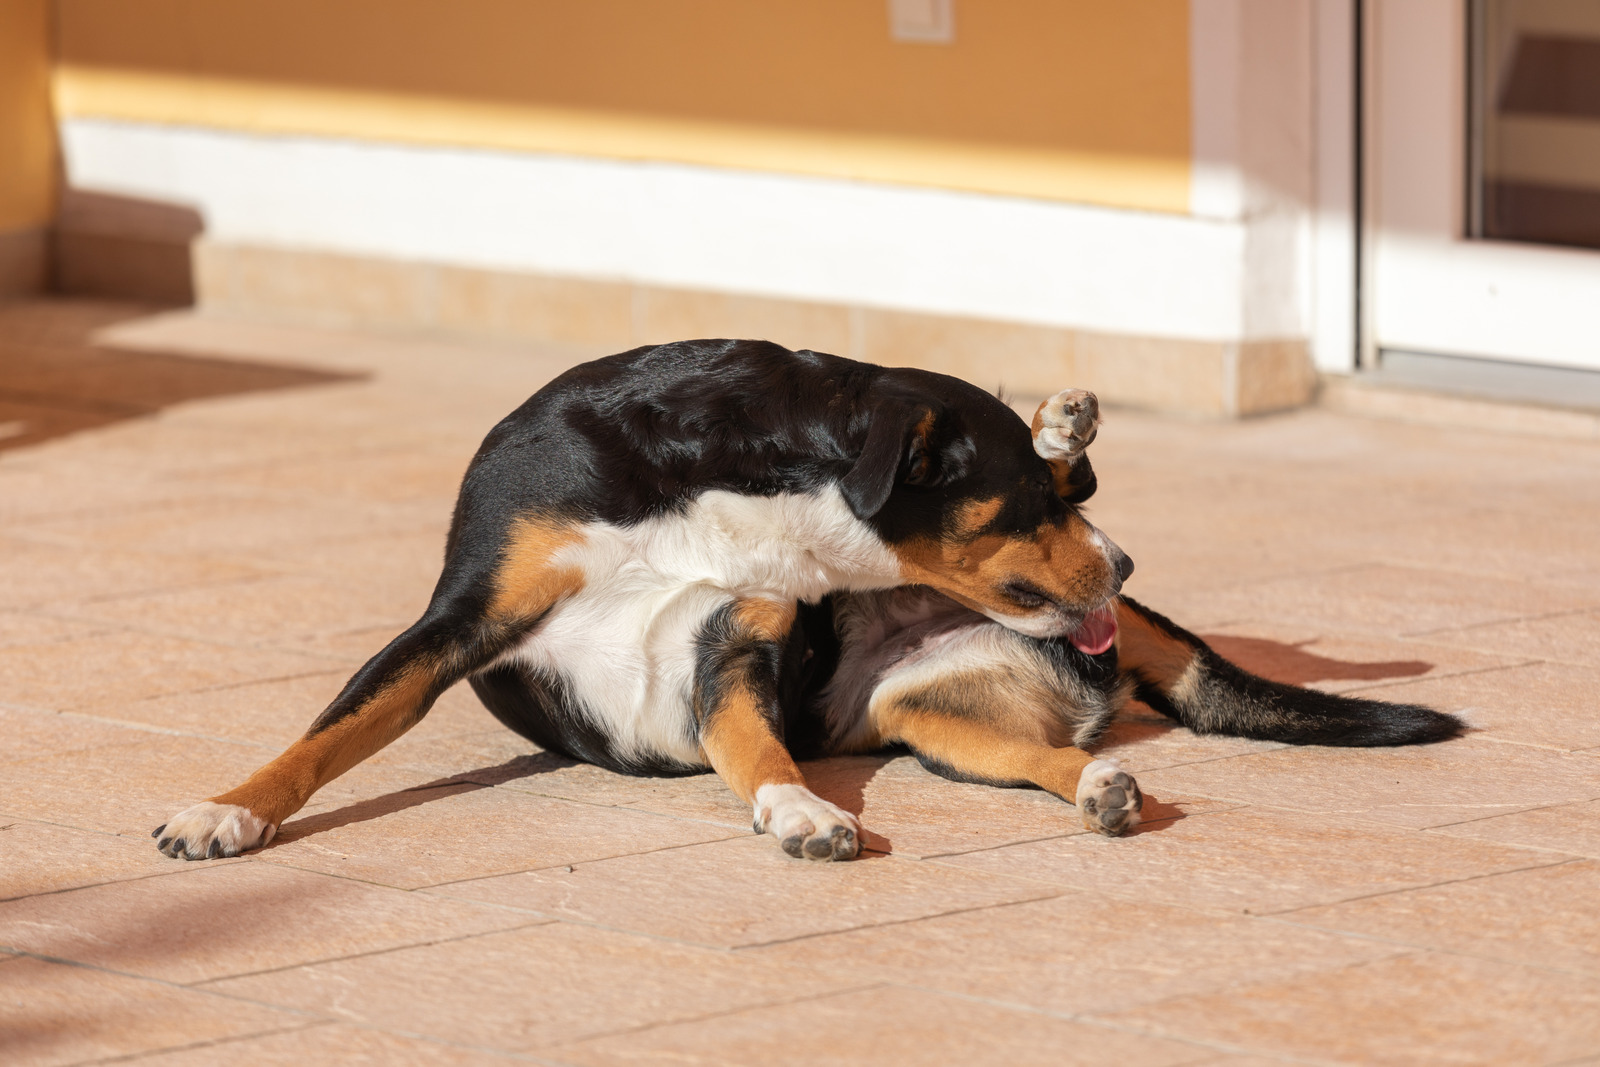 Hond met eerste loopsheid maakt zichzelf schoon en ligt op beige vloer